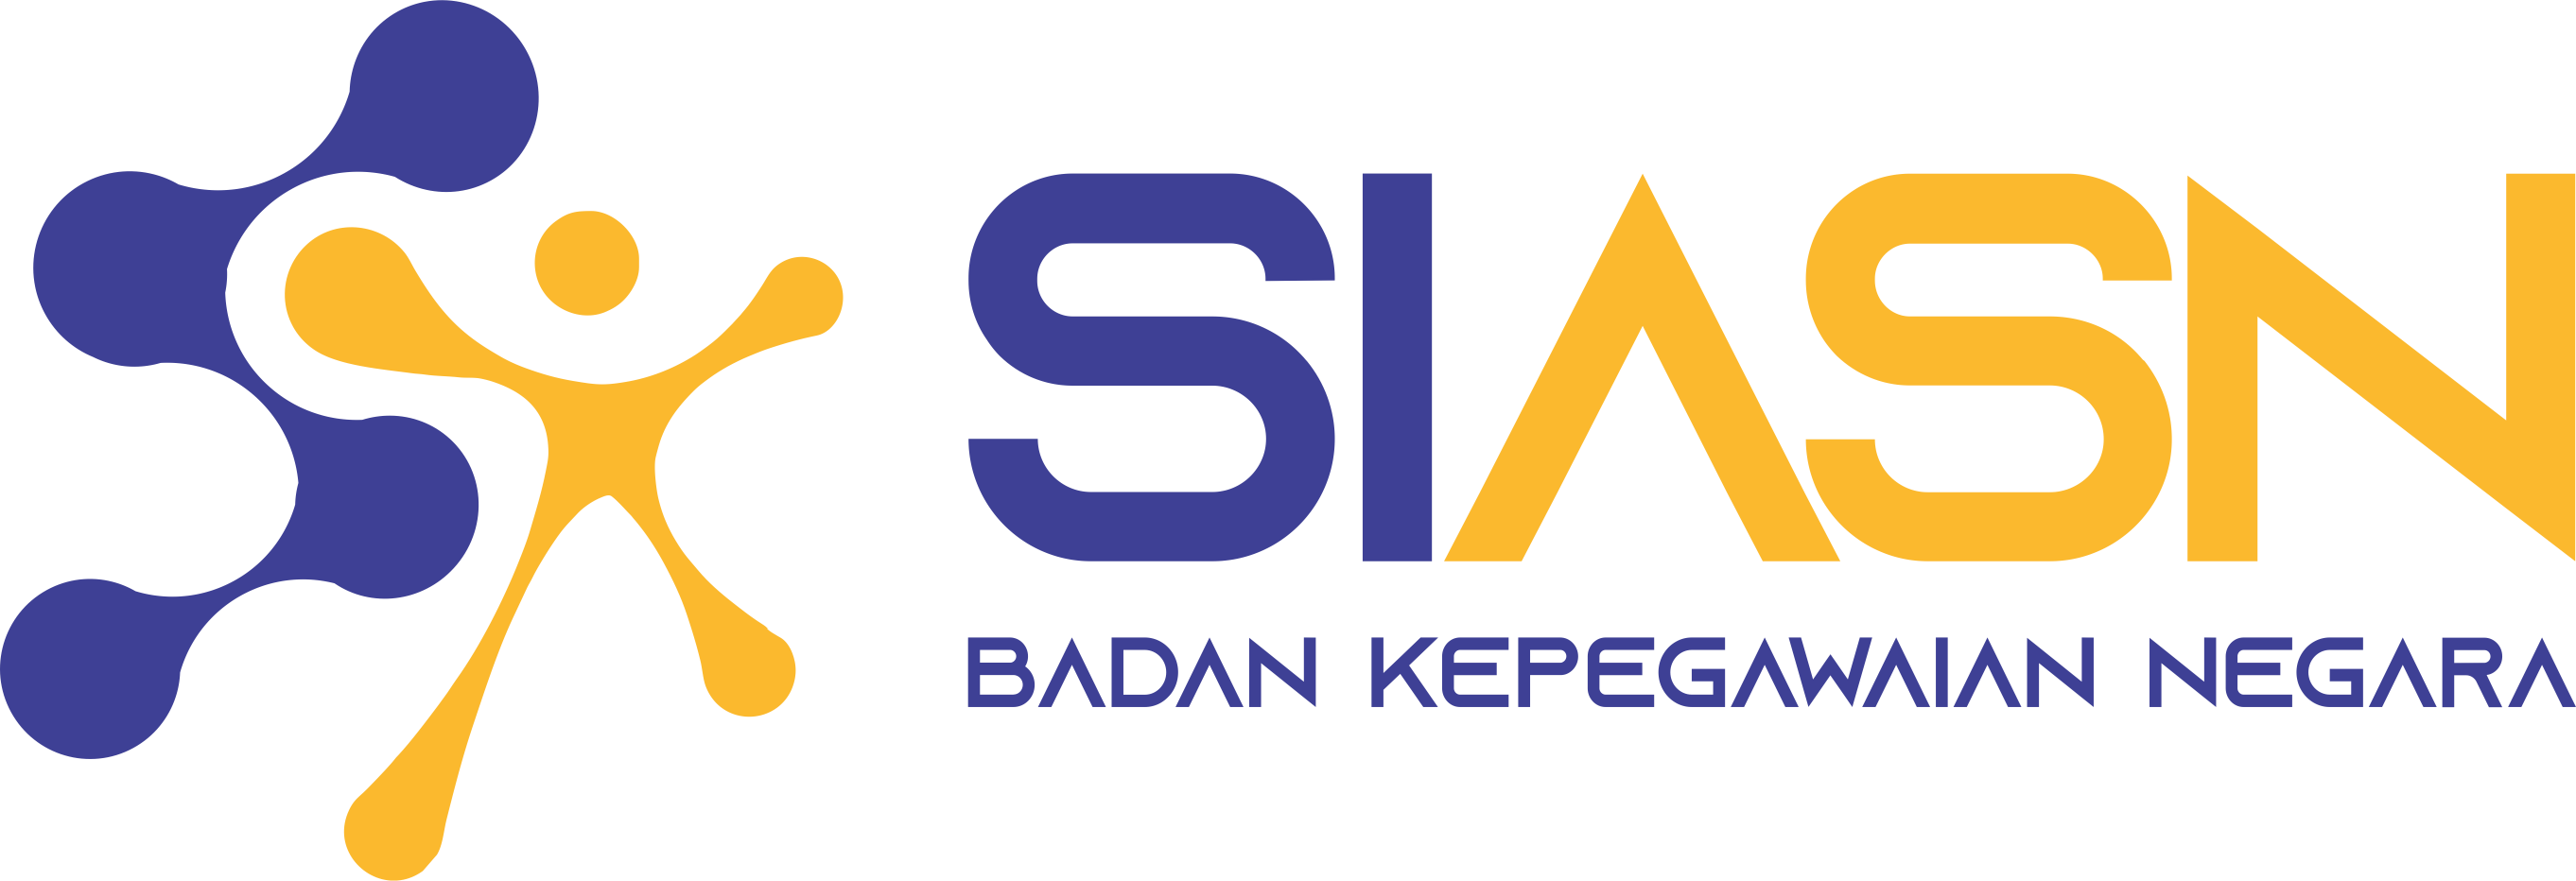 logo bkn